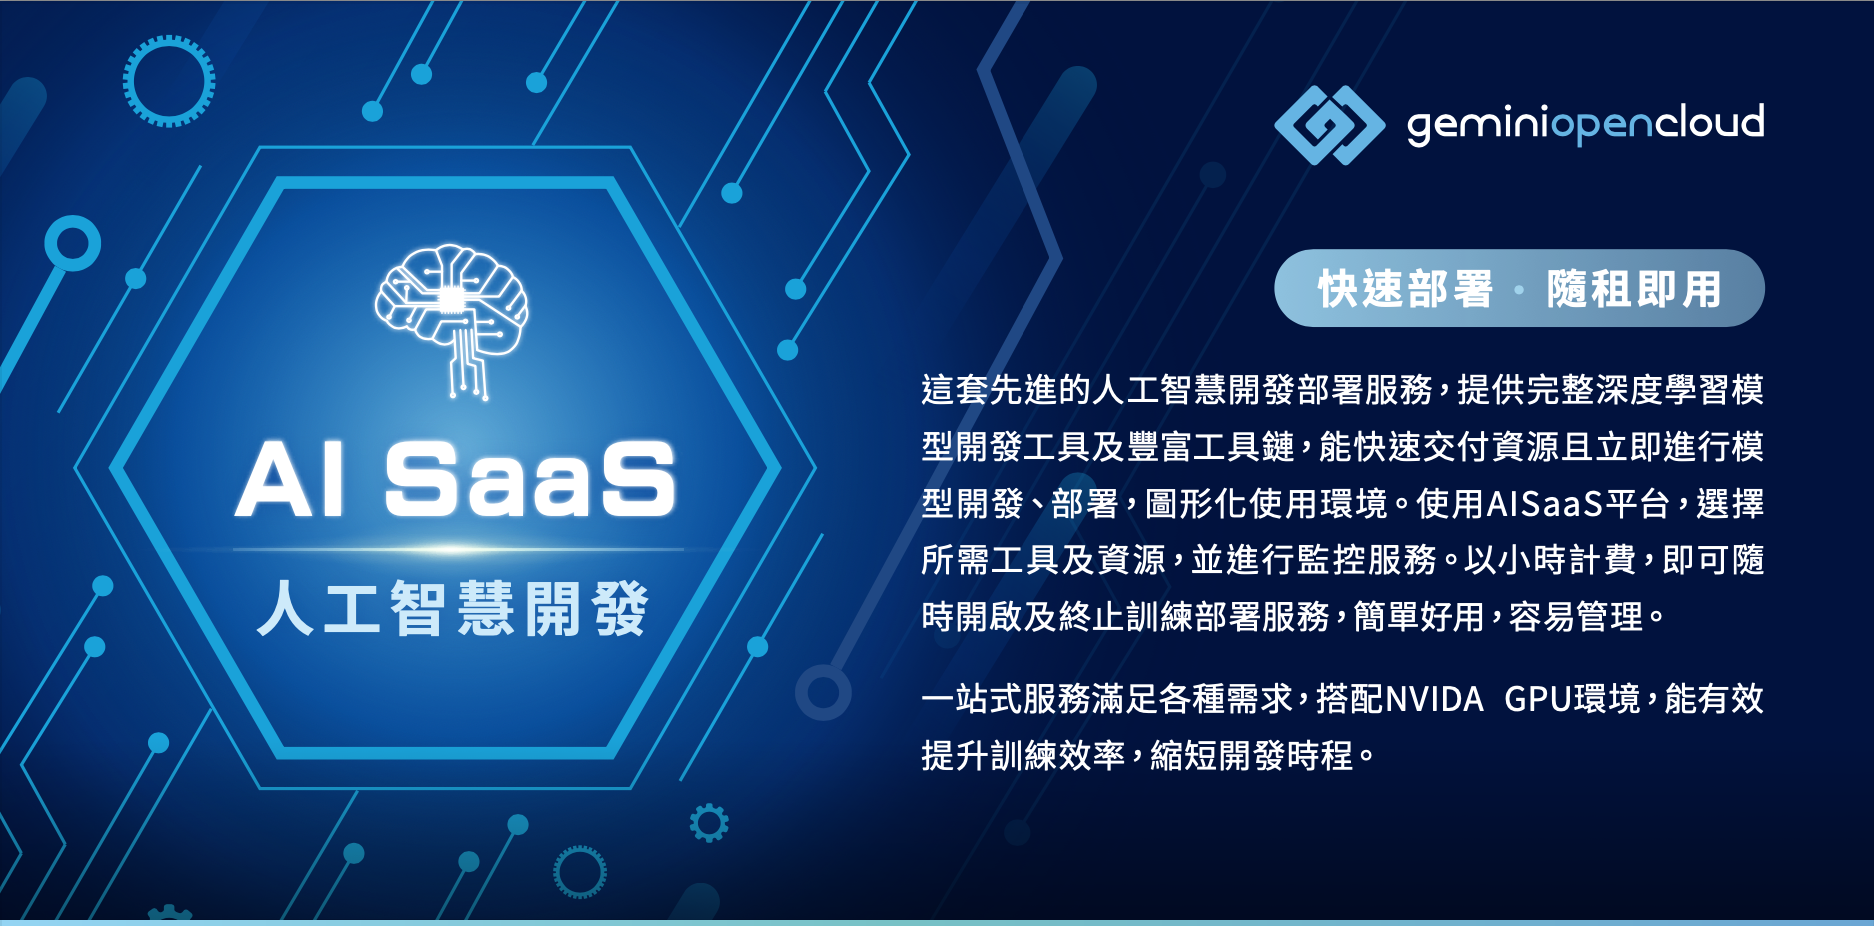 AI SaaS 人工智慧開發平台